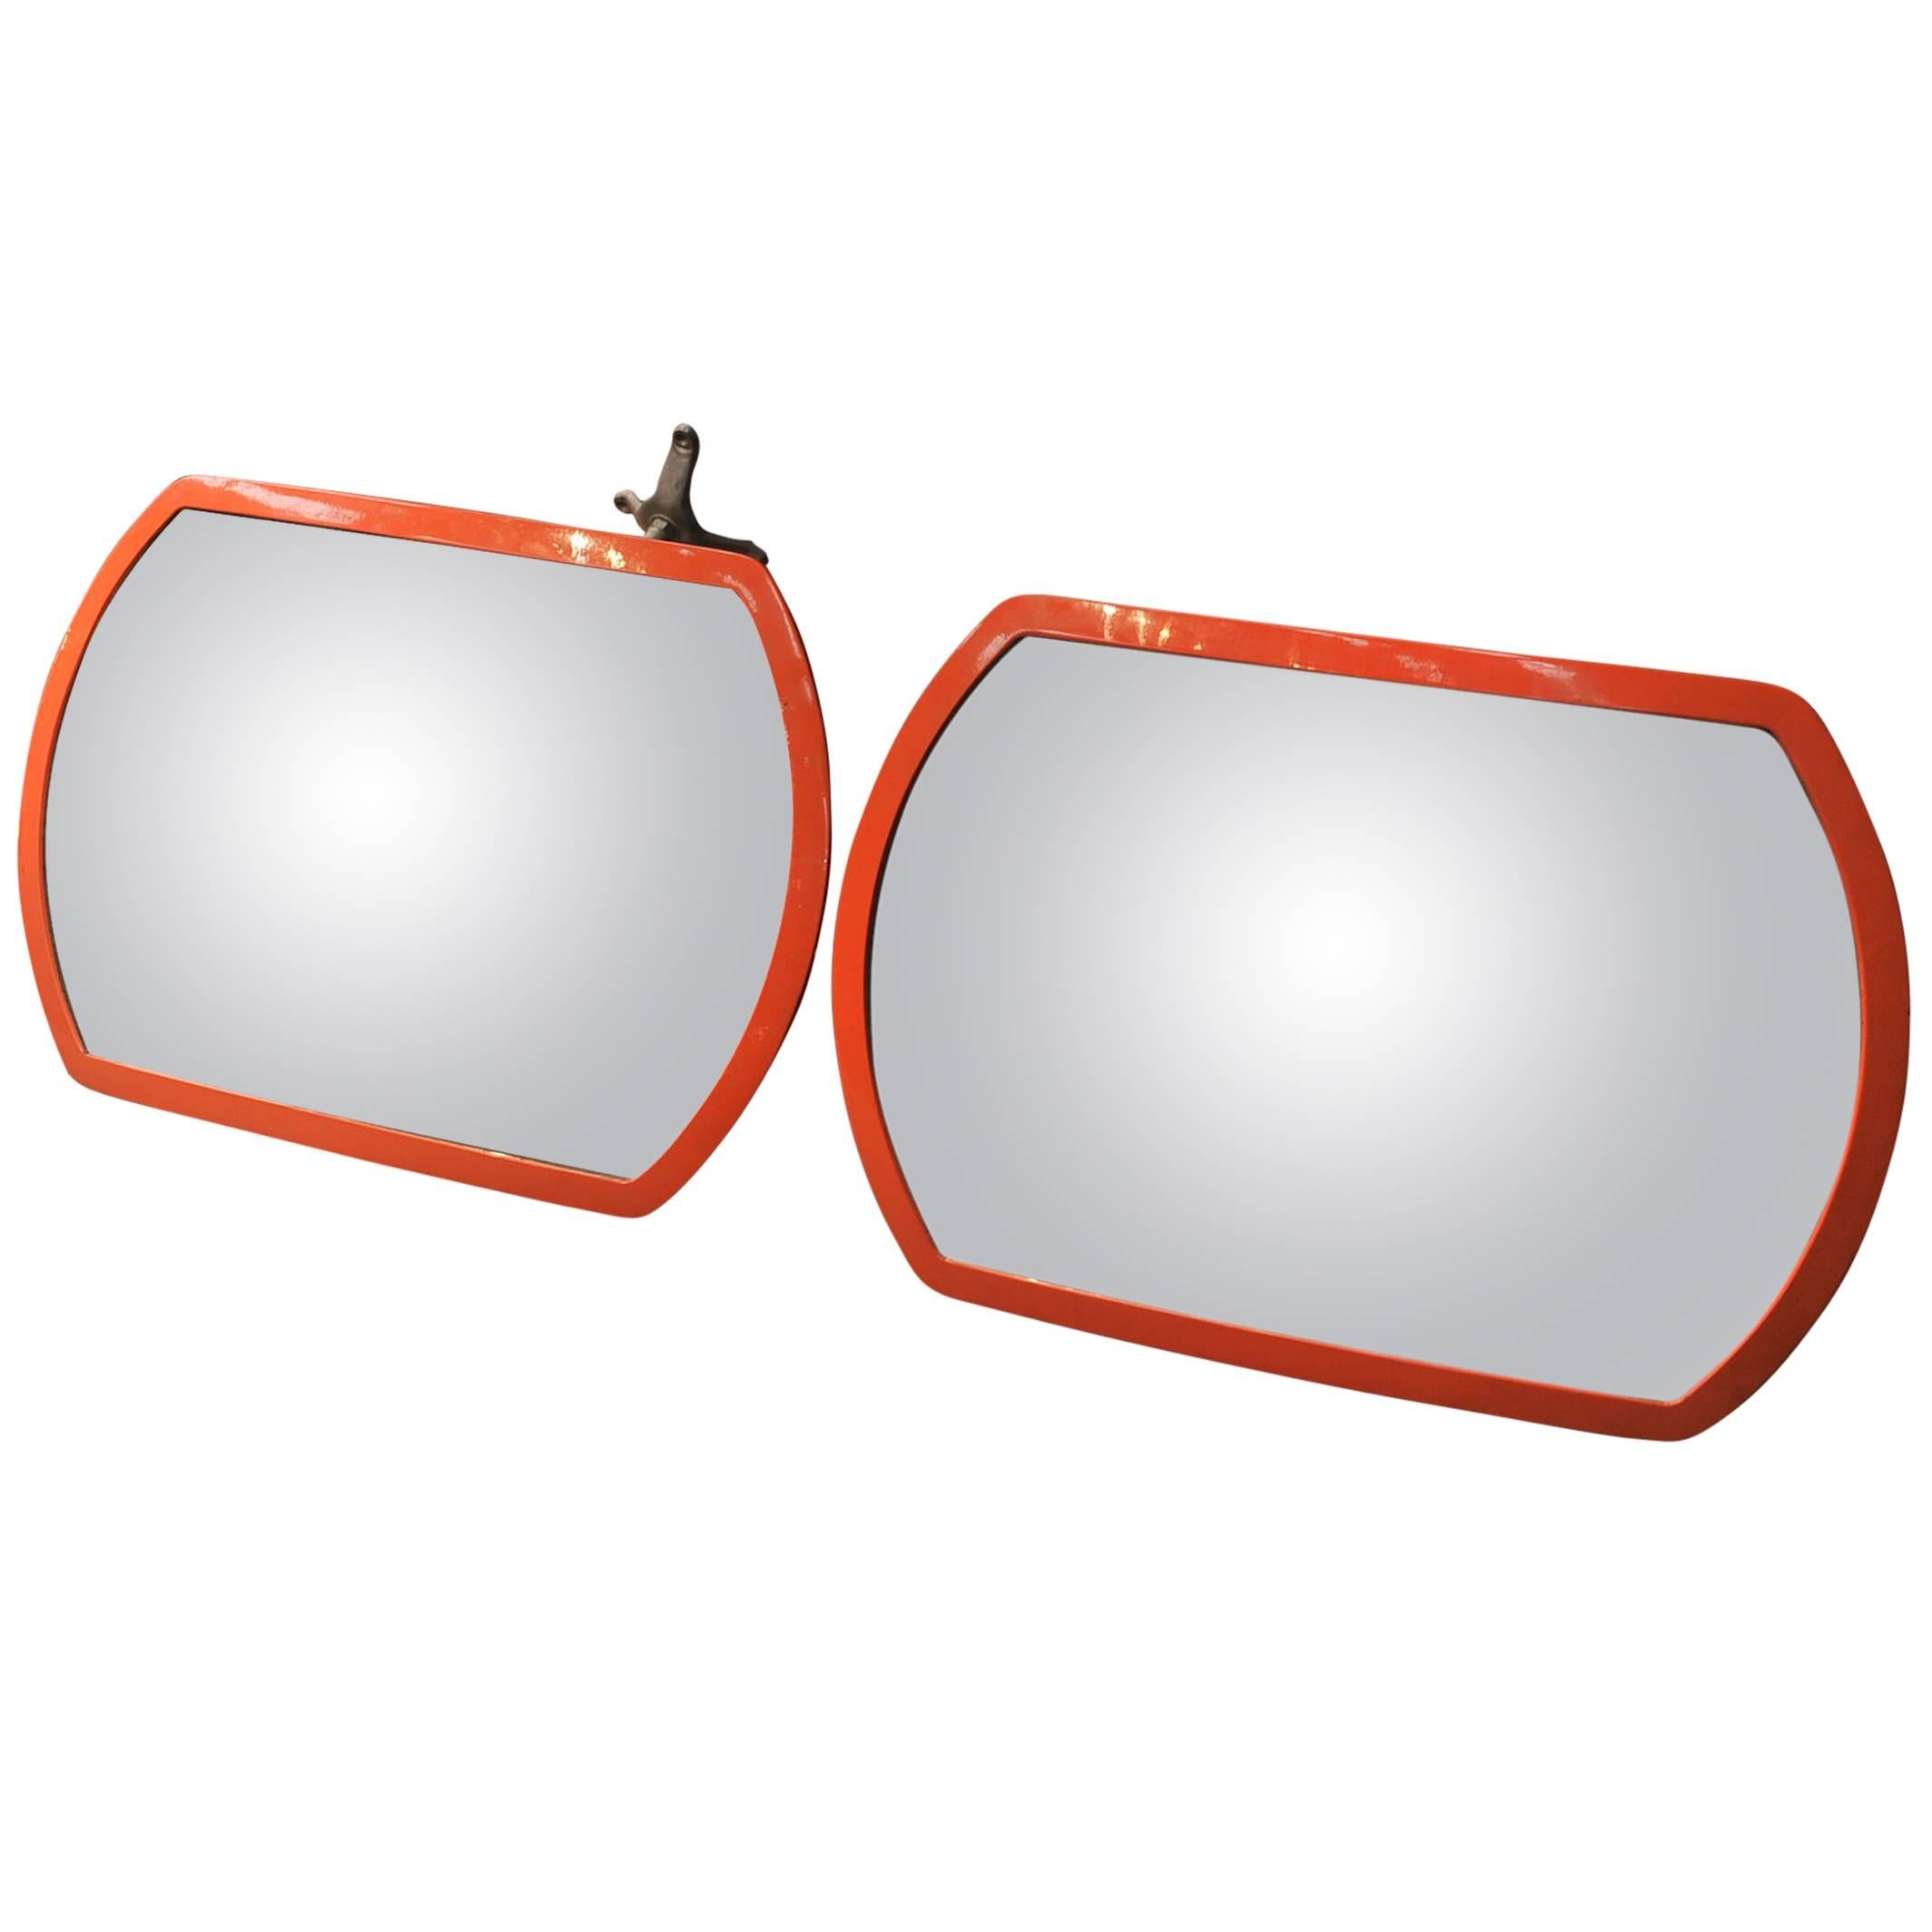 Pair of 1960s Design Orange Convex Wall Mirrors